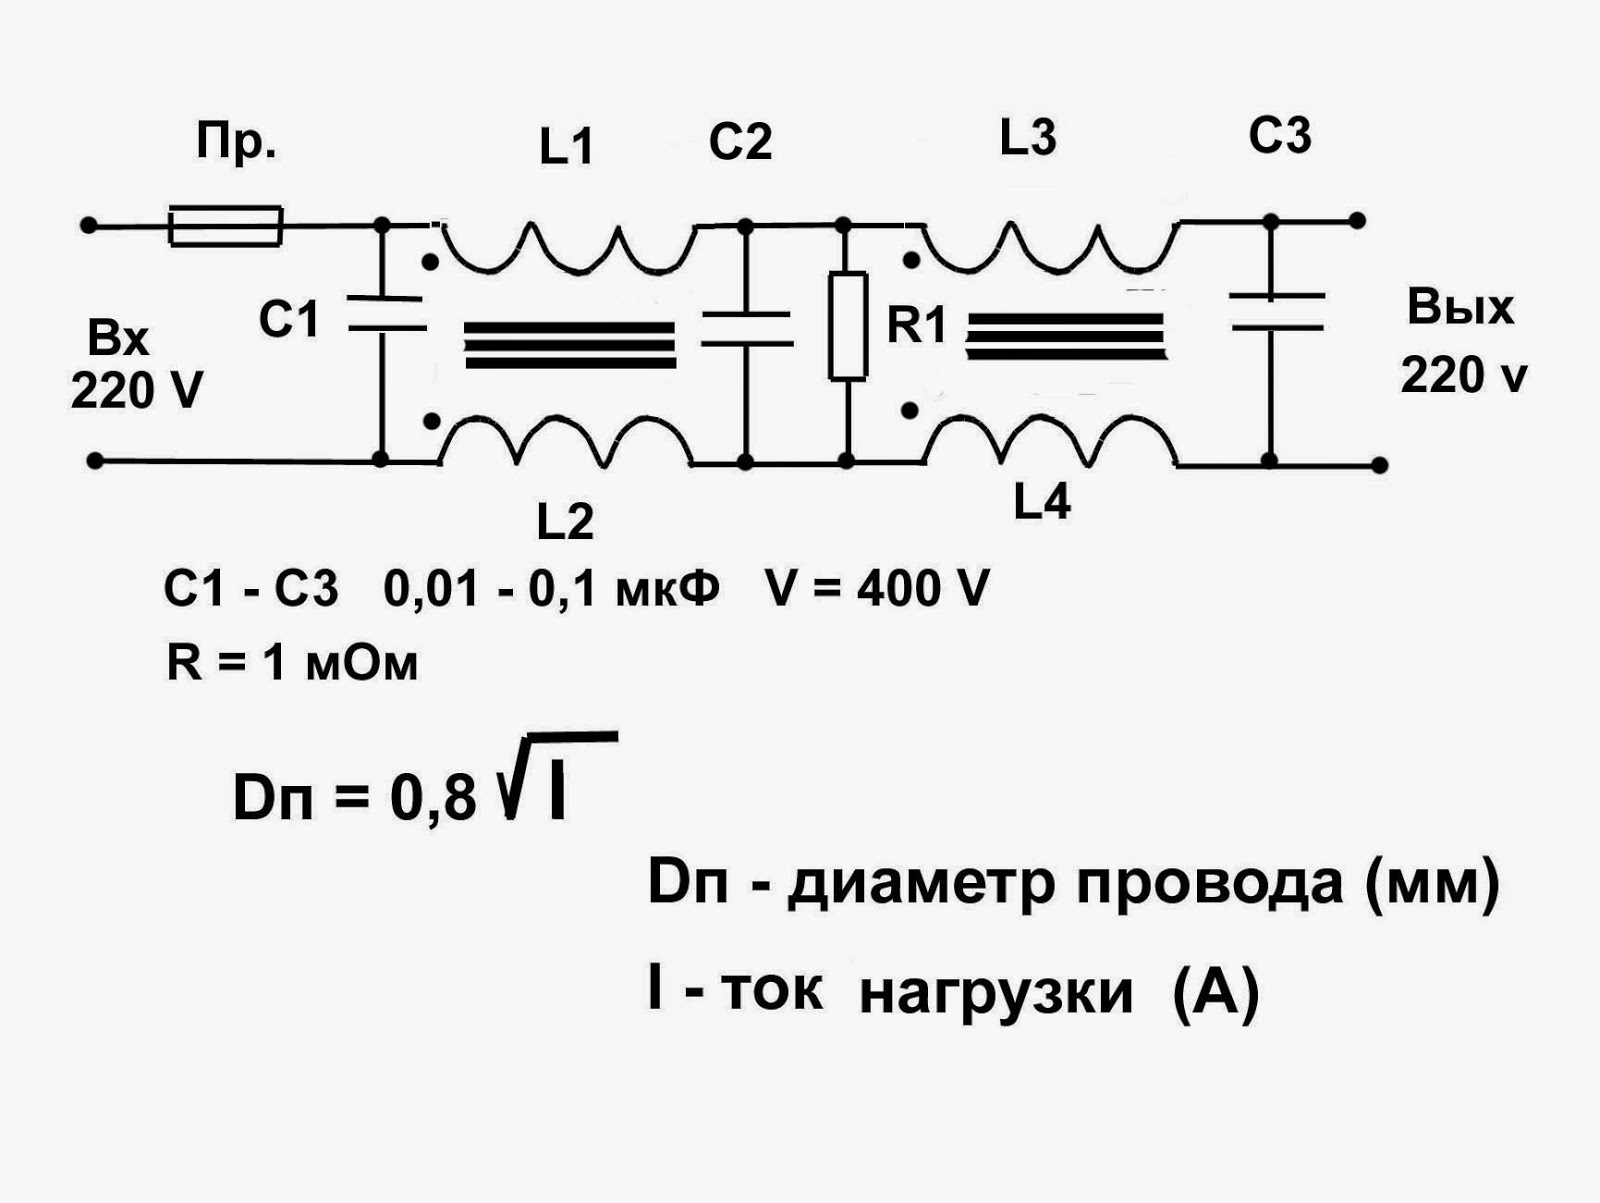 Диодный мост кврс5010 схема подключения - moy-instrument.ru - обзор инструмента и техники